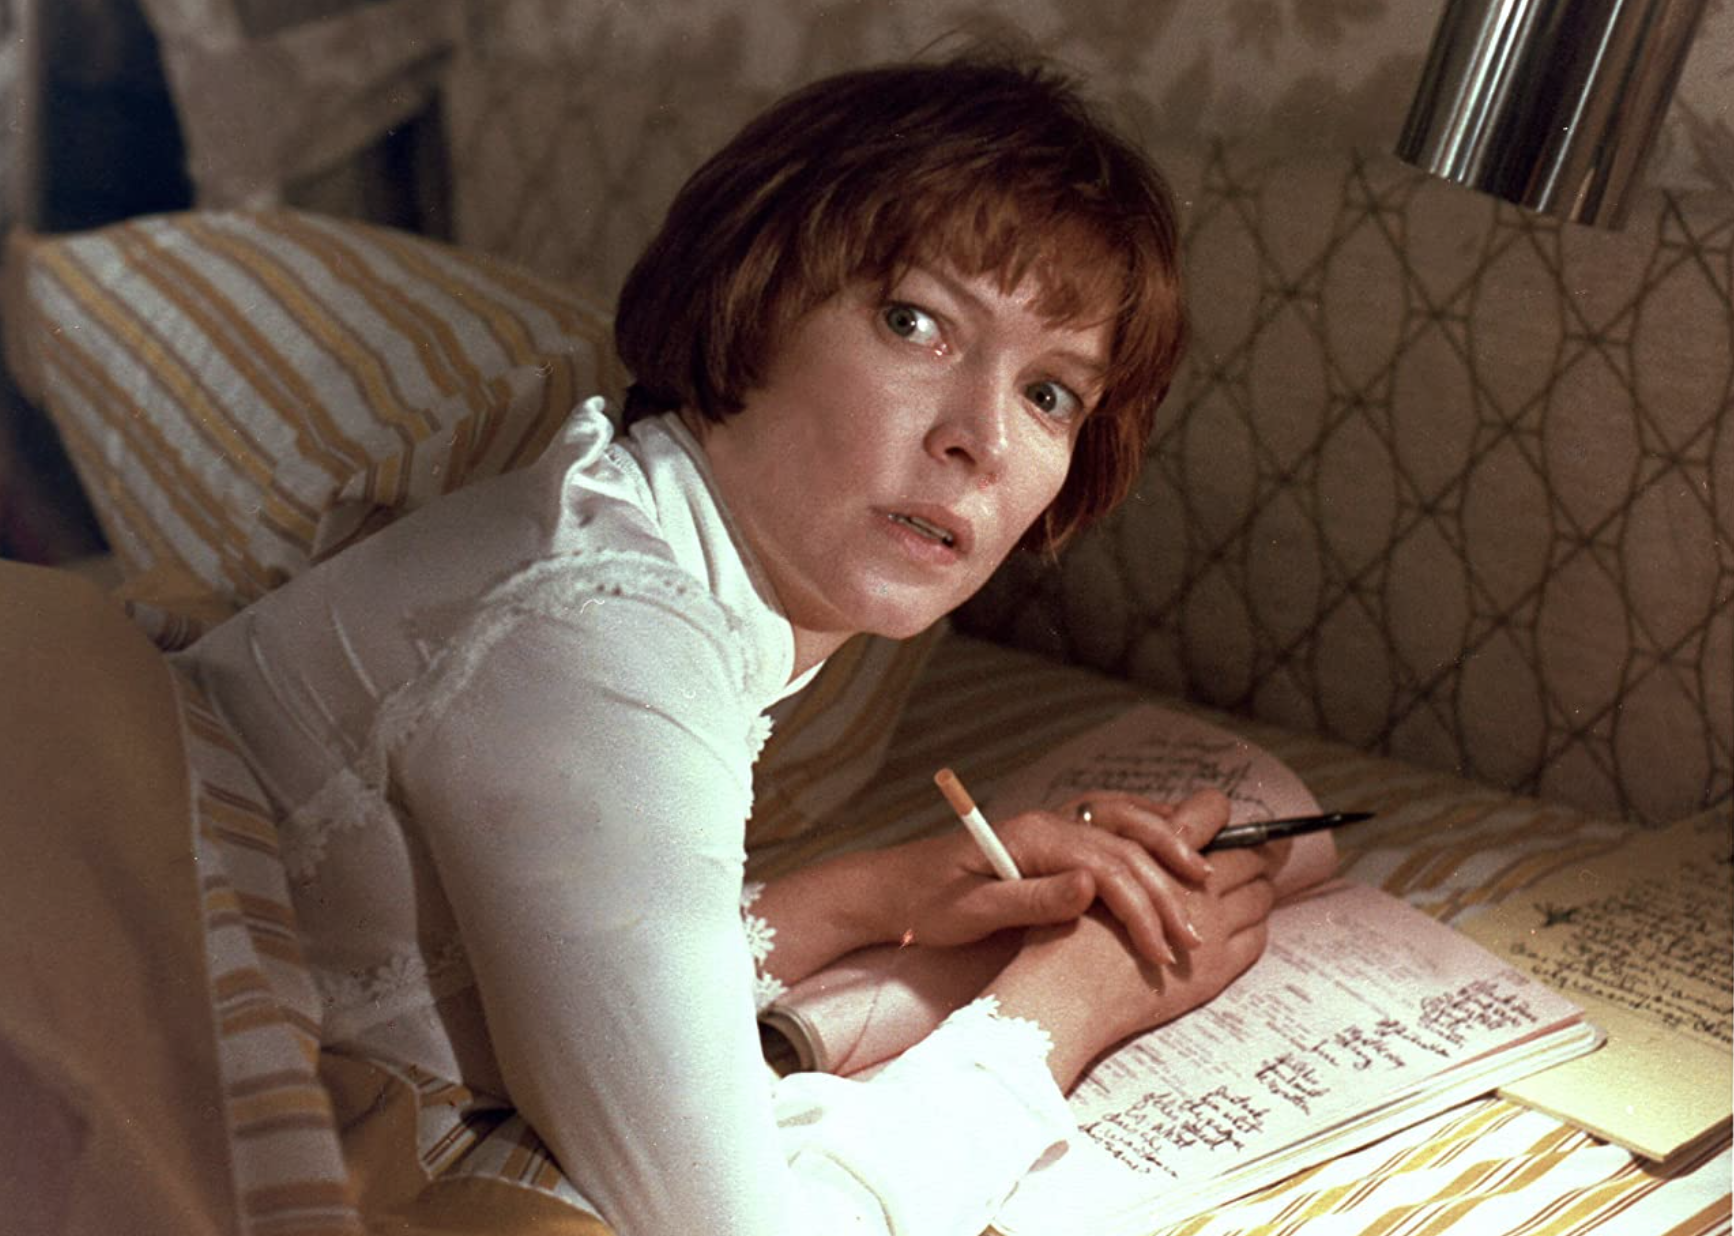 Ellen Burstyn in "The Exorcist".